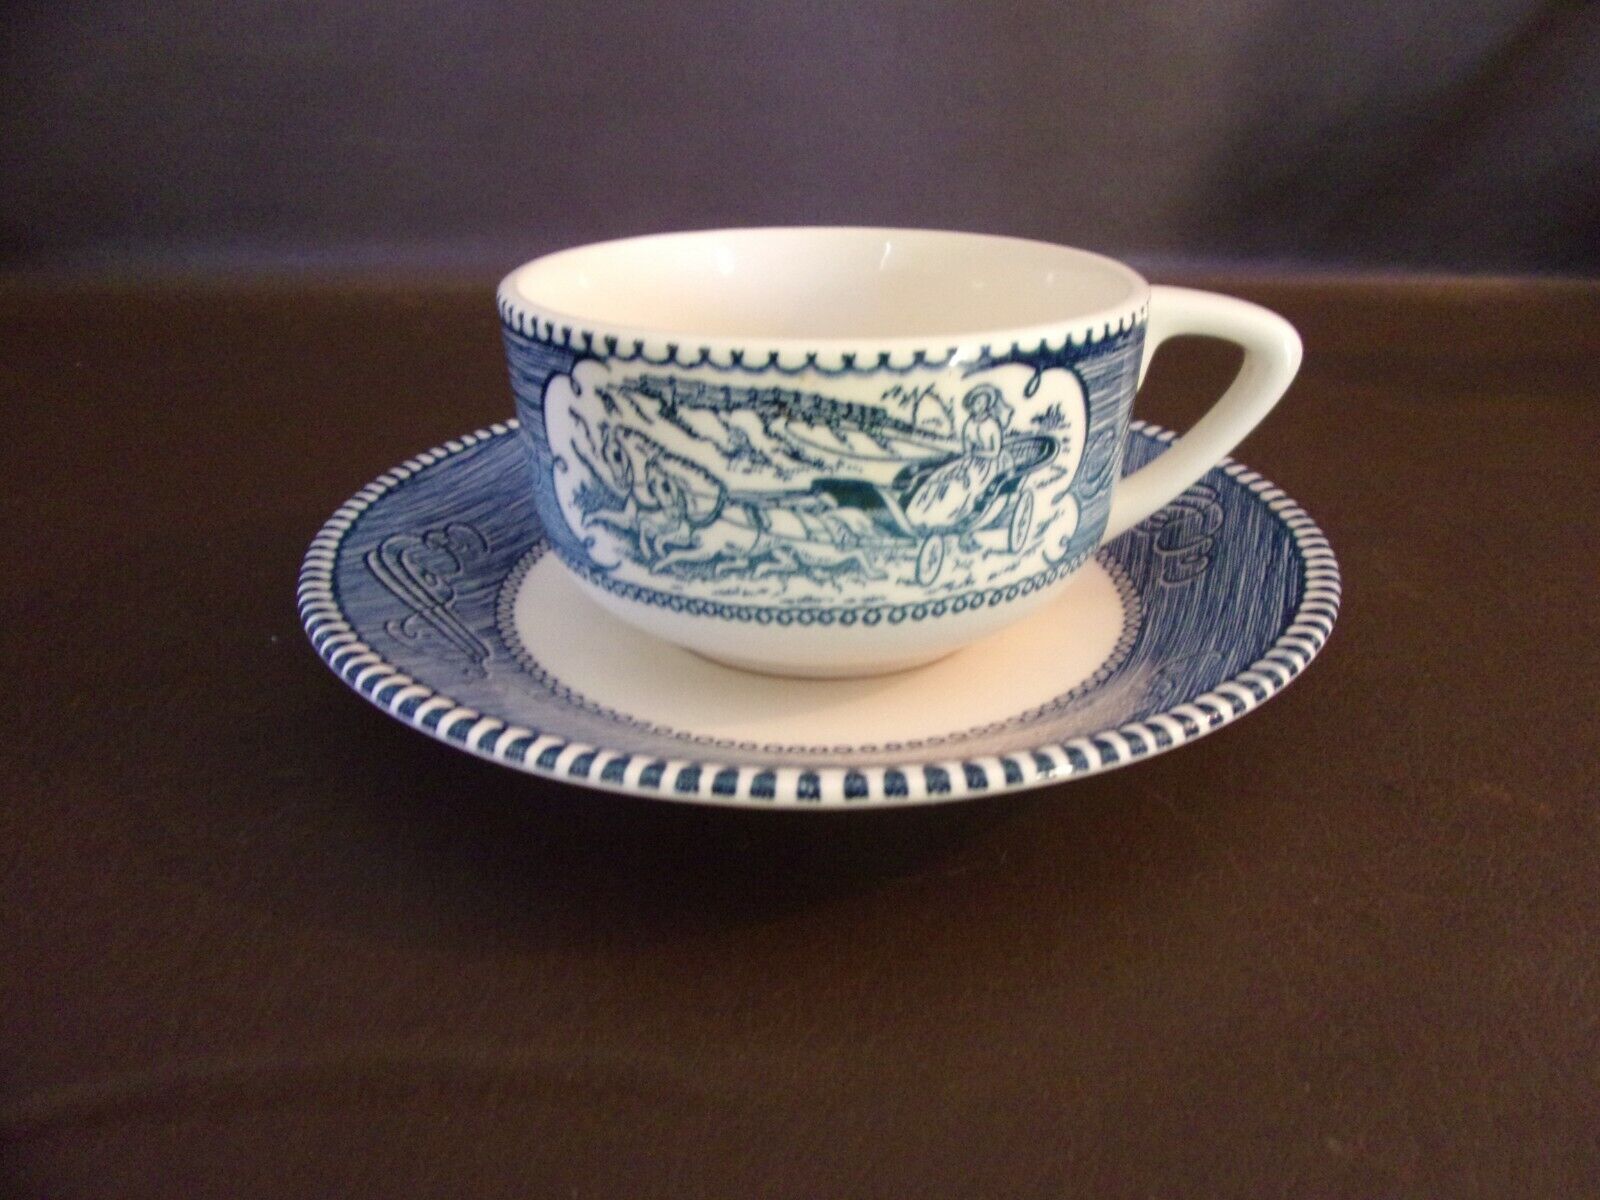 Vintage Royal China Currier & Ives Cup & Saucer Set